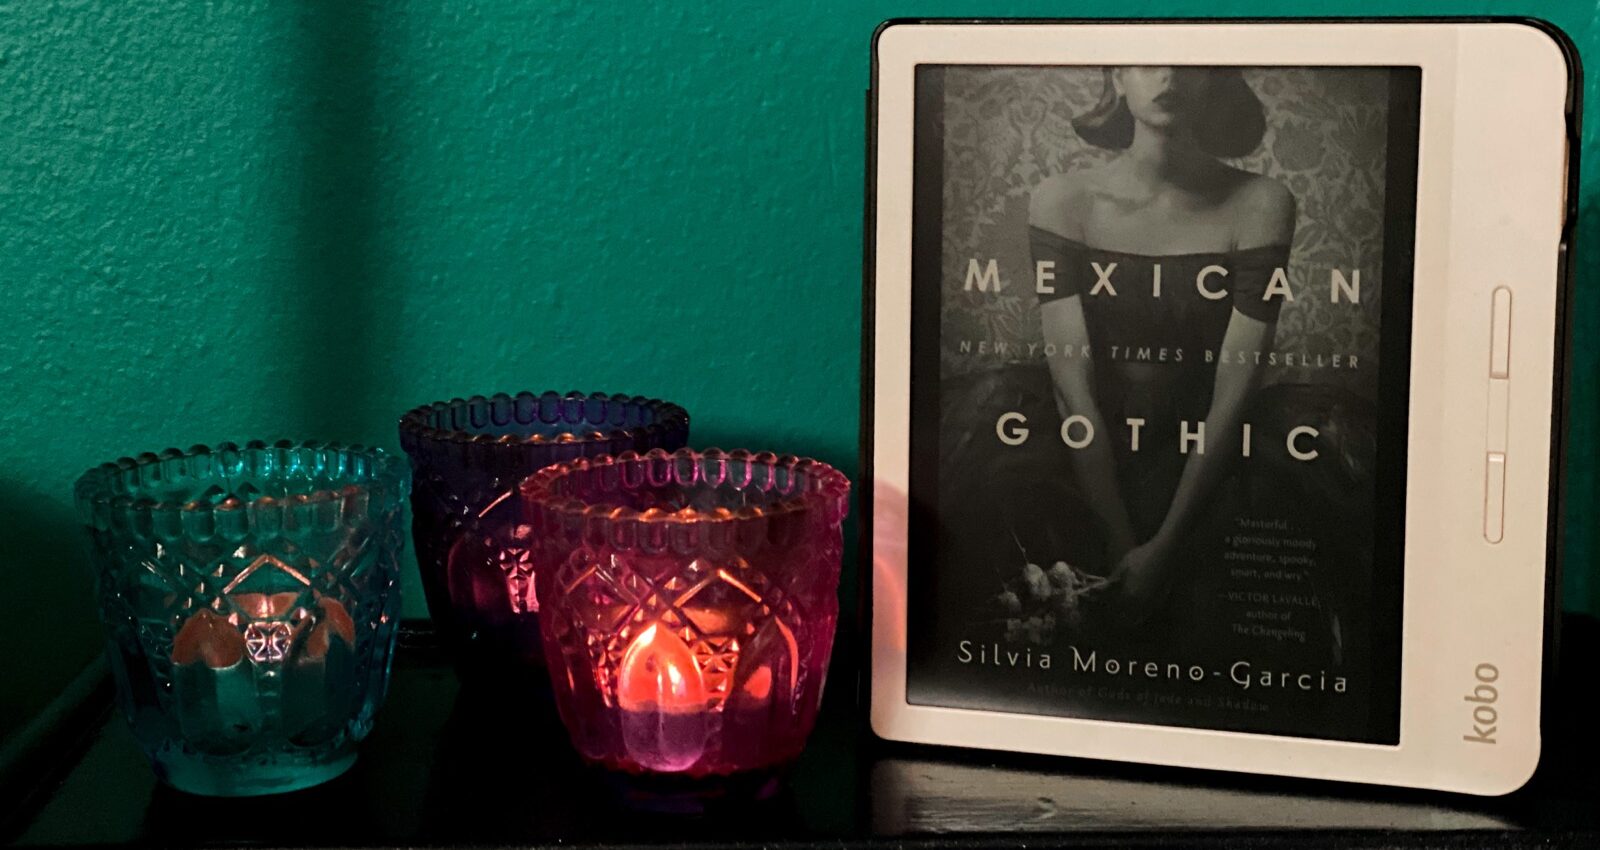 59: Mexican Gothic by Silivia Moreno-Garcia